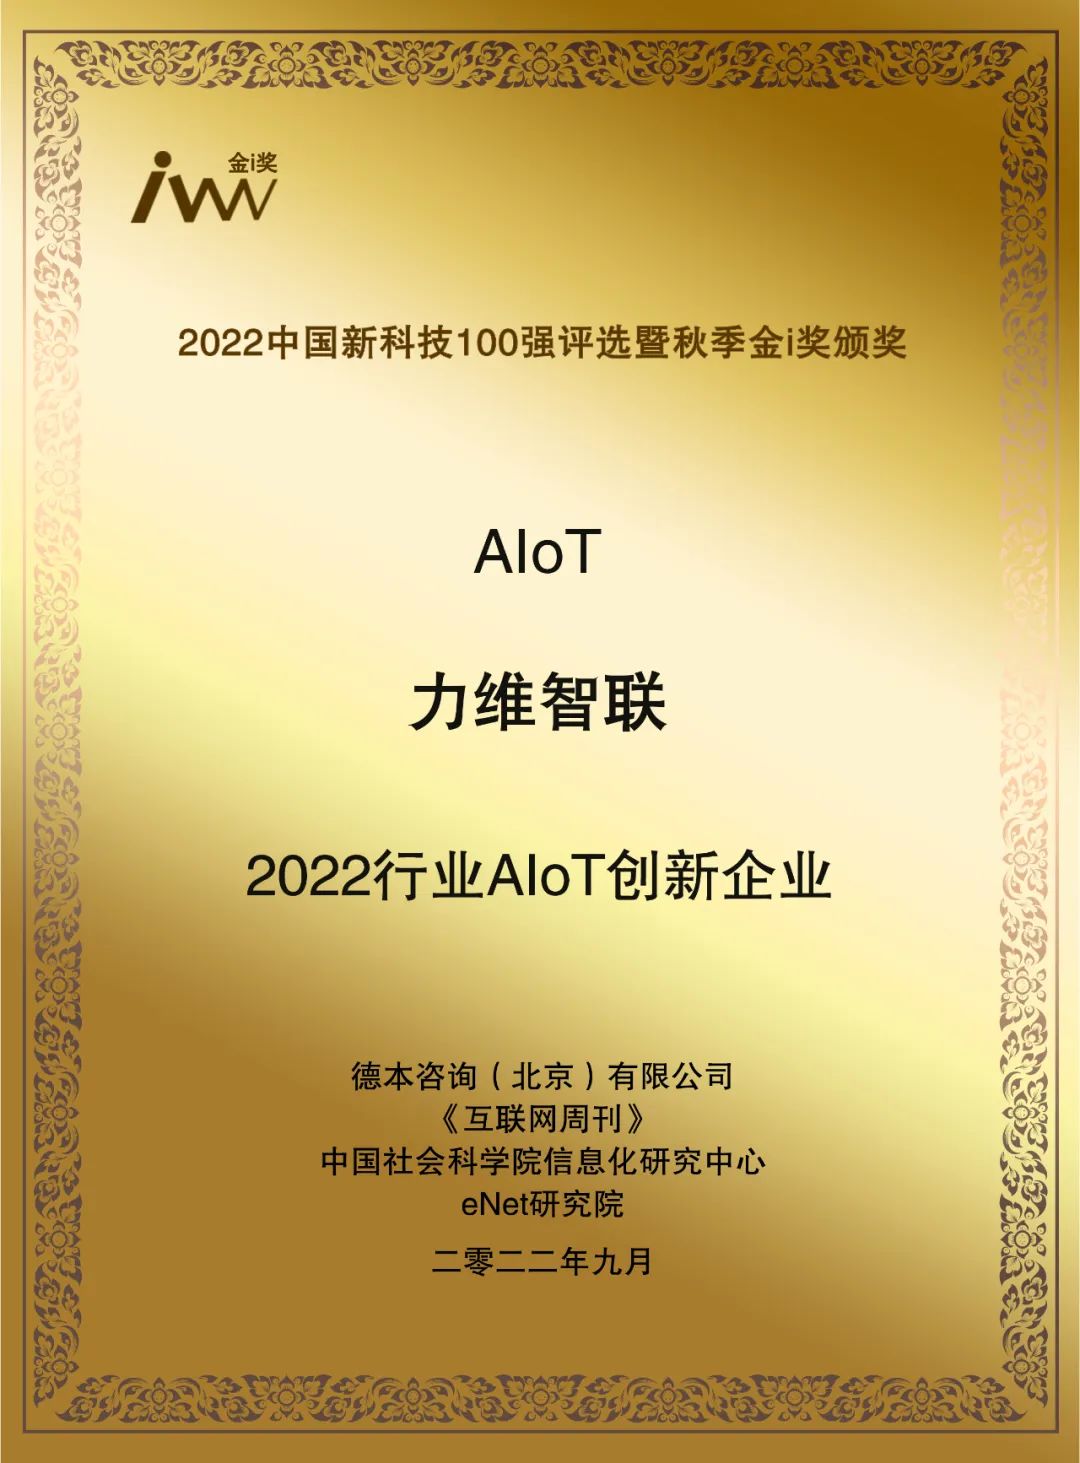 深耕AIoT | 力維智聯獲評“2022行業AIoT創新企業”